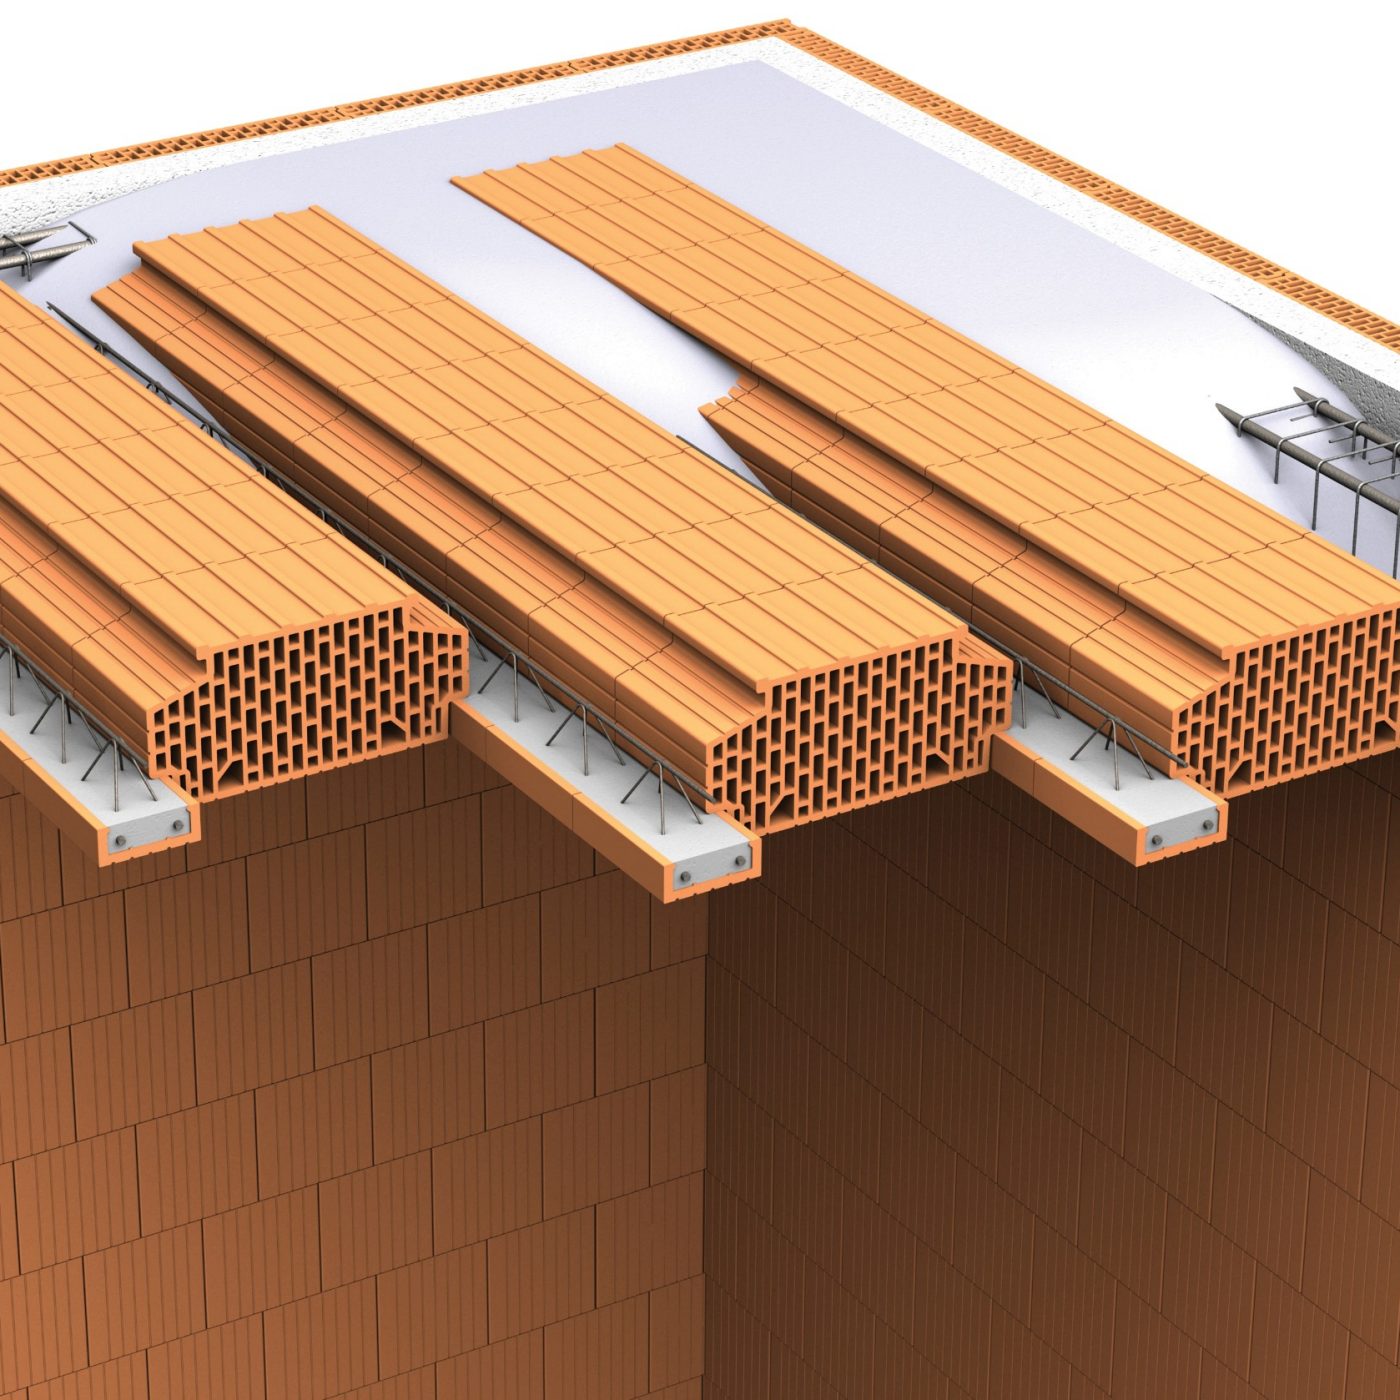 Některé stropy z keramických vložek už nevyžadují nadbetonování horní vrstvou betonu (Wienerberger)